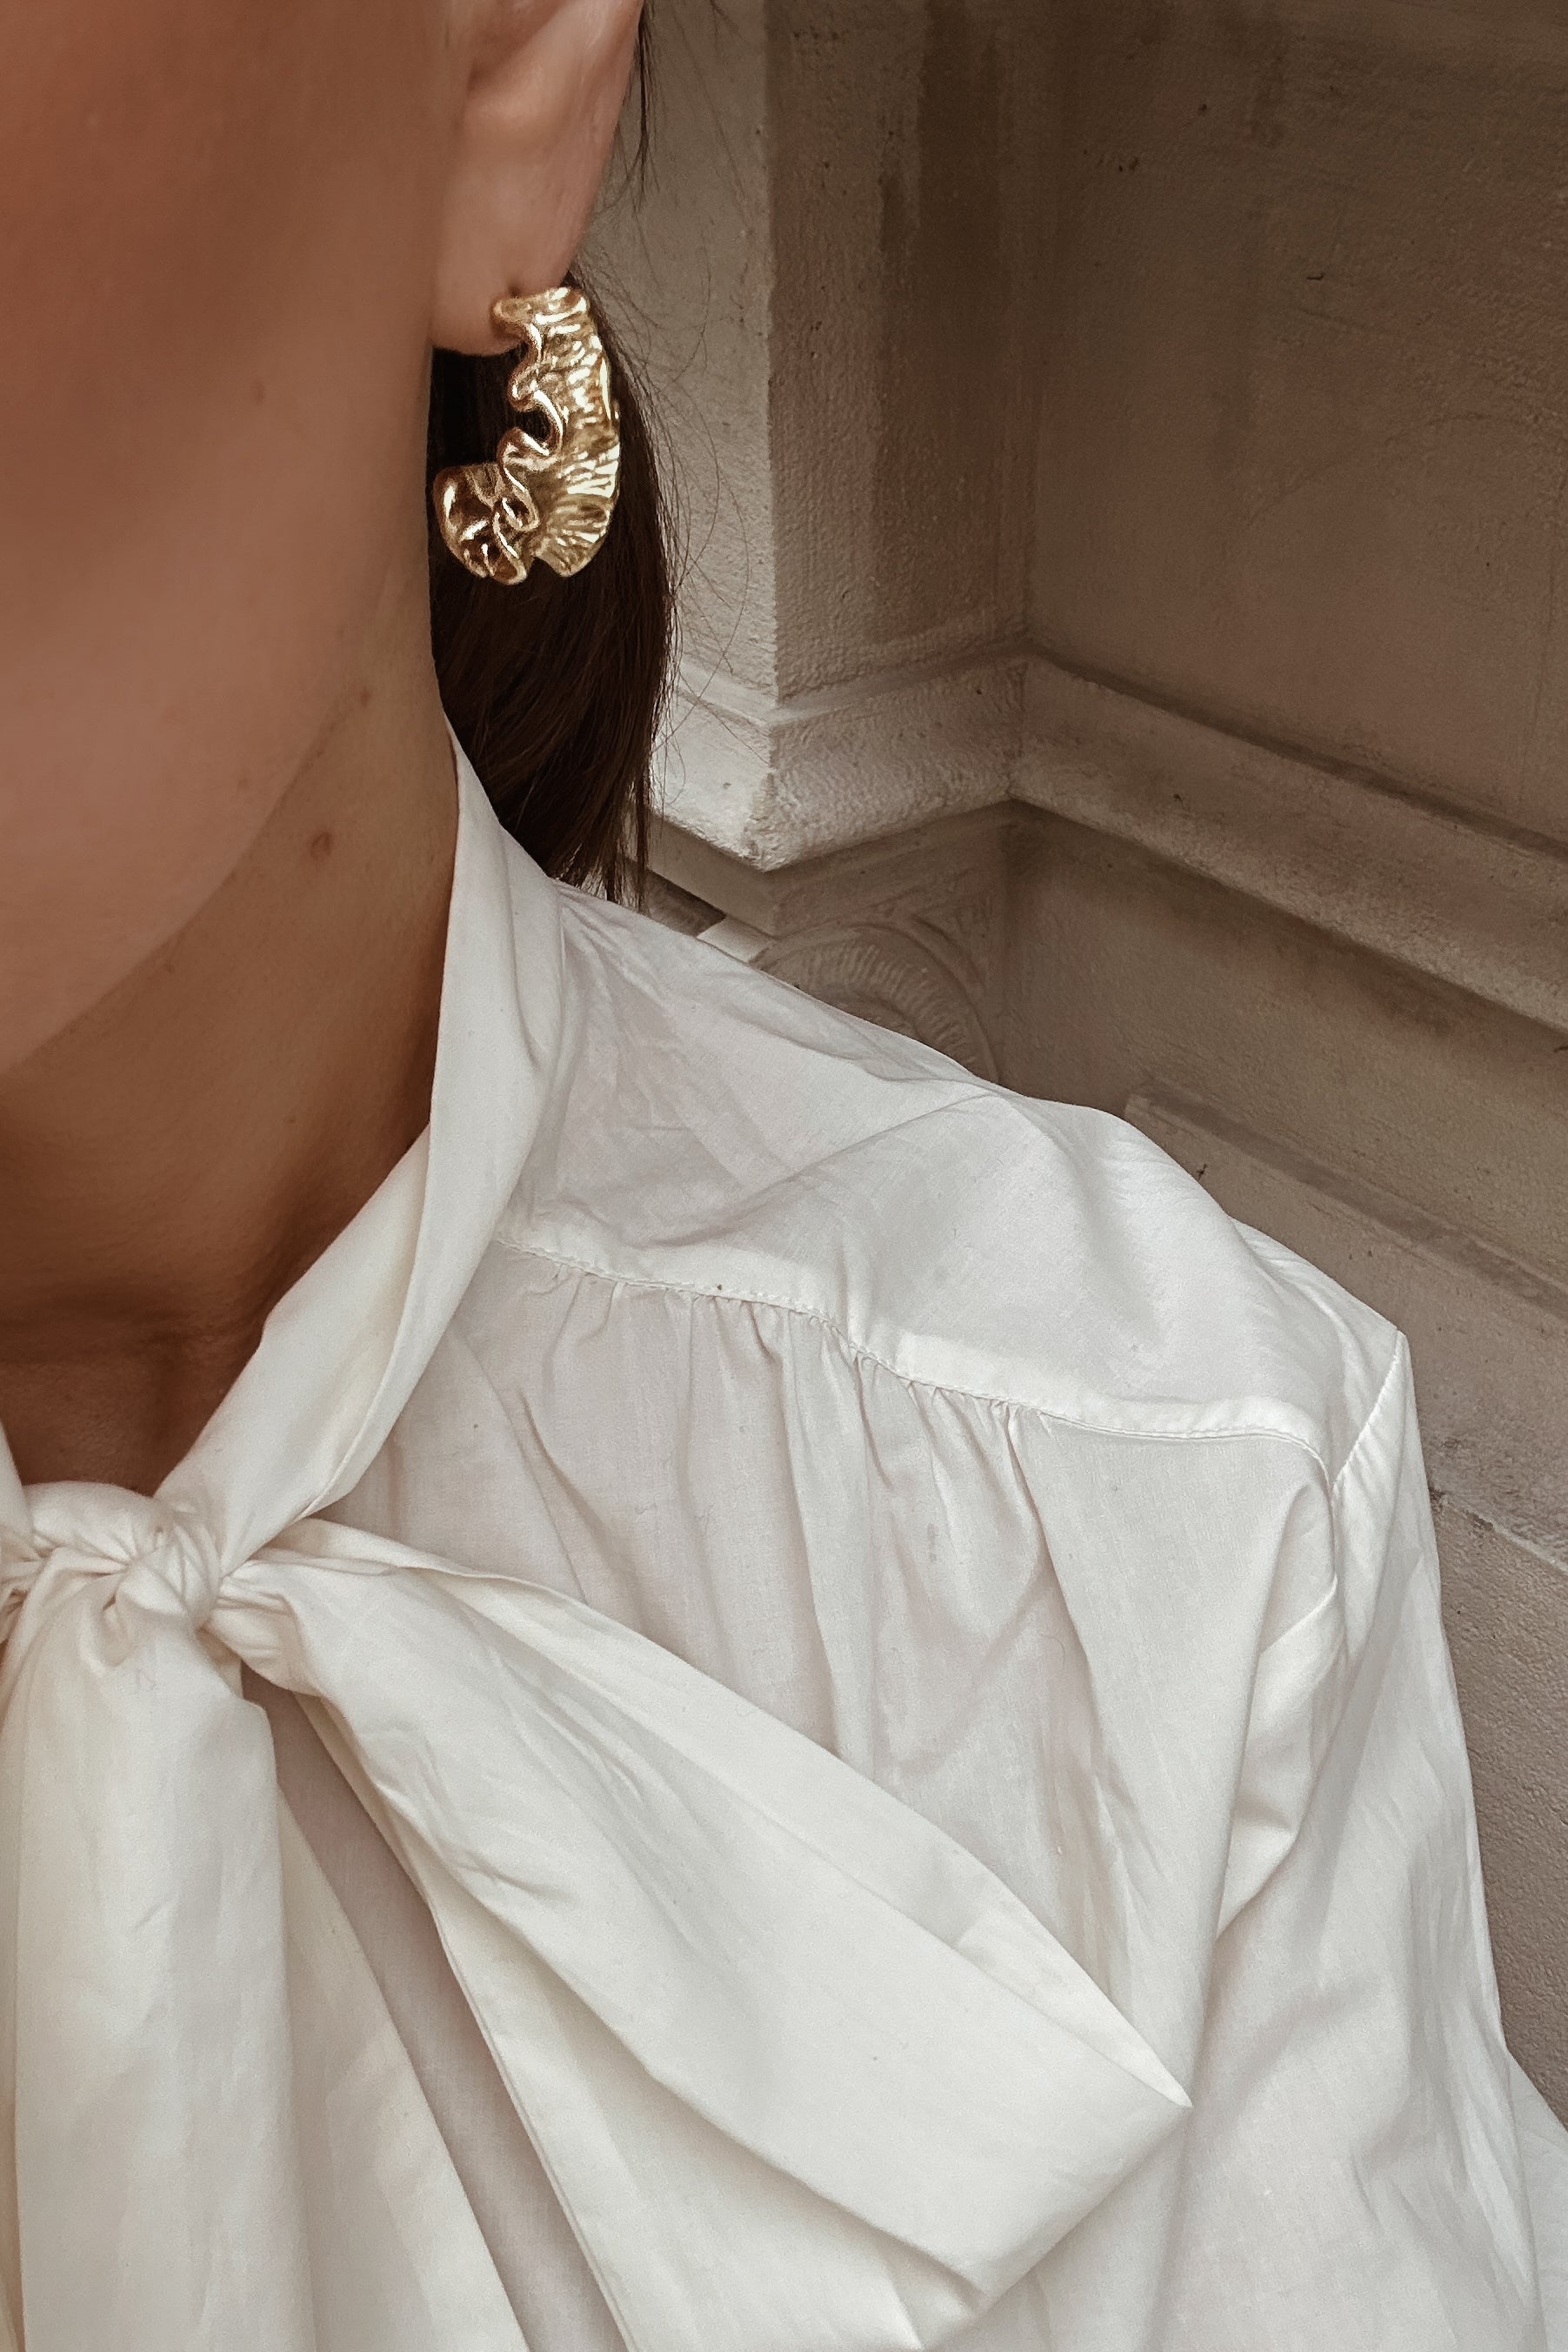 Vesper Earrings - Boutique Minimaliste has waterproof, durable, elegant and vintage inspired jewelry